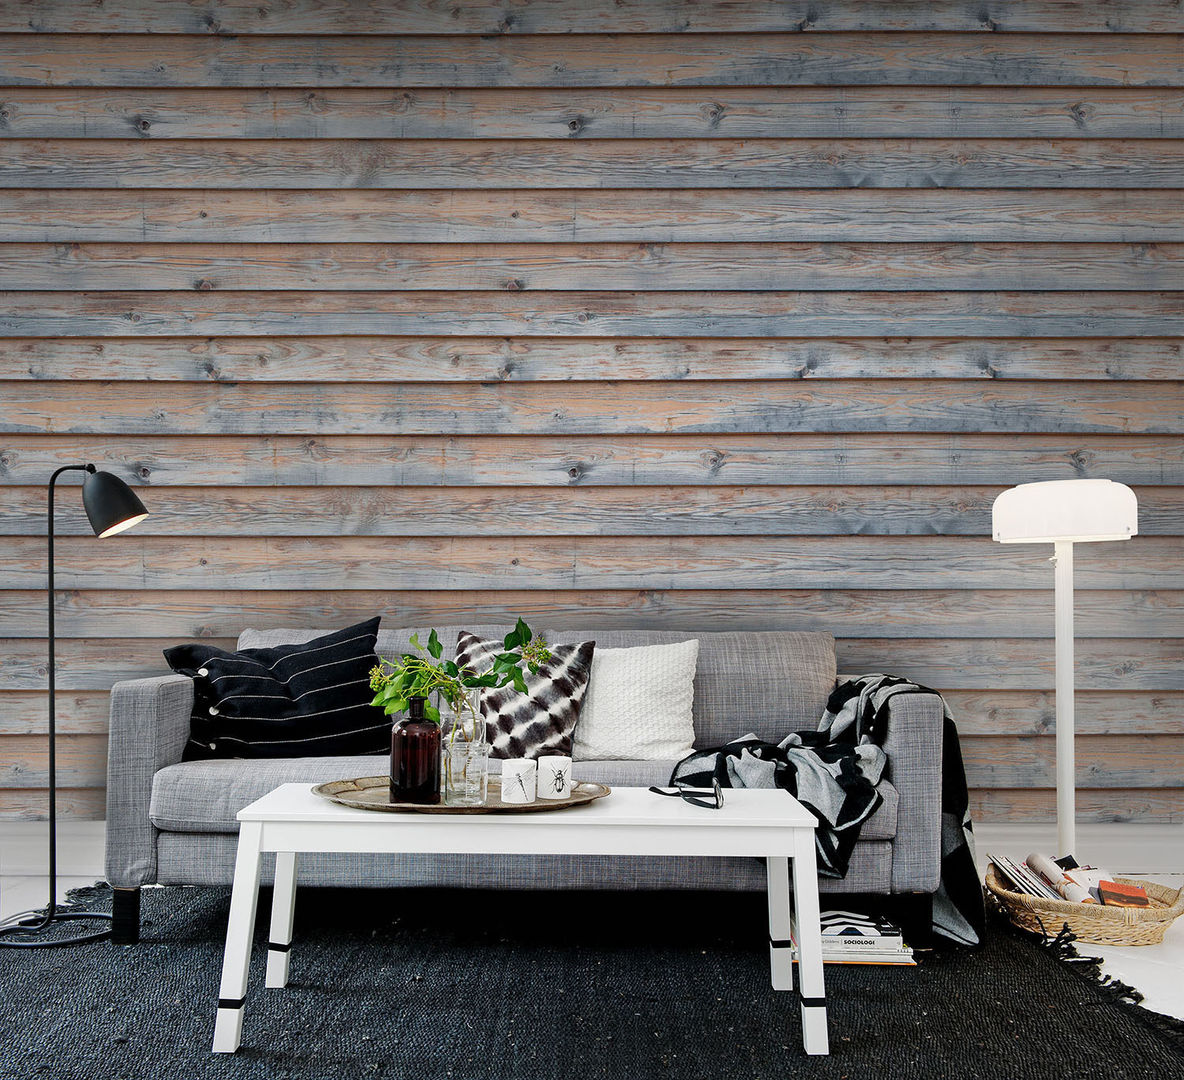 Planks Wallpaper by Mister smith interiors homify Paredes y pisos de estilo rústico Papeles pintados